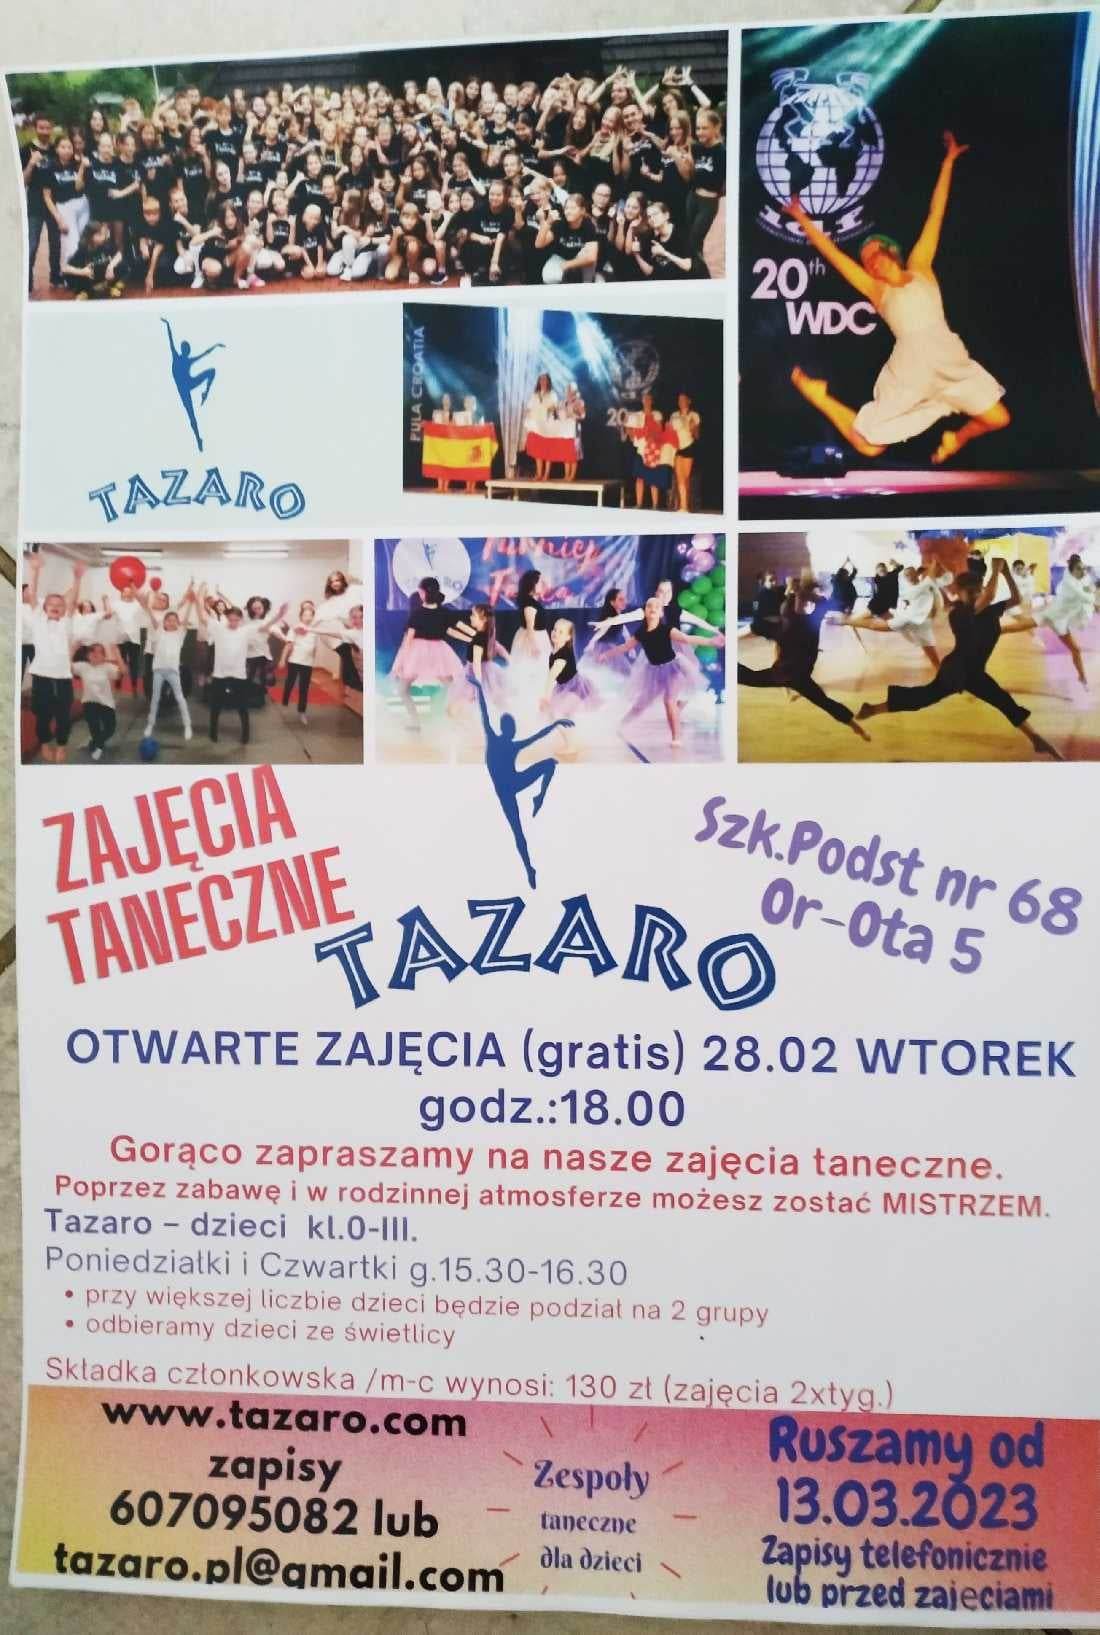 TAZARO_zajęcia_taneczne w SP 68